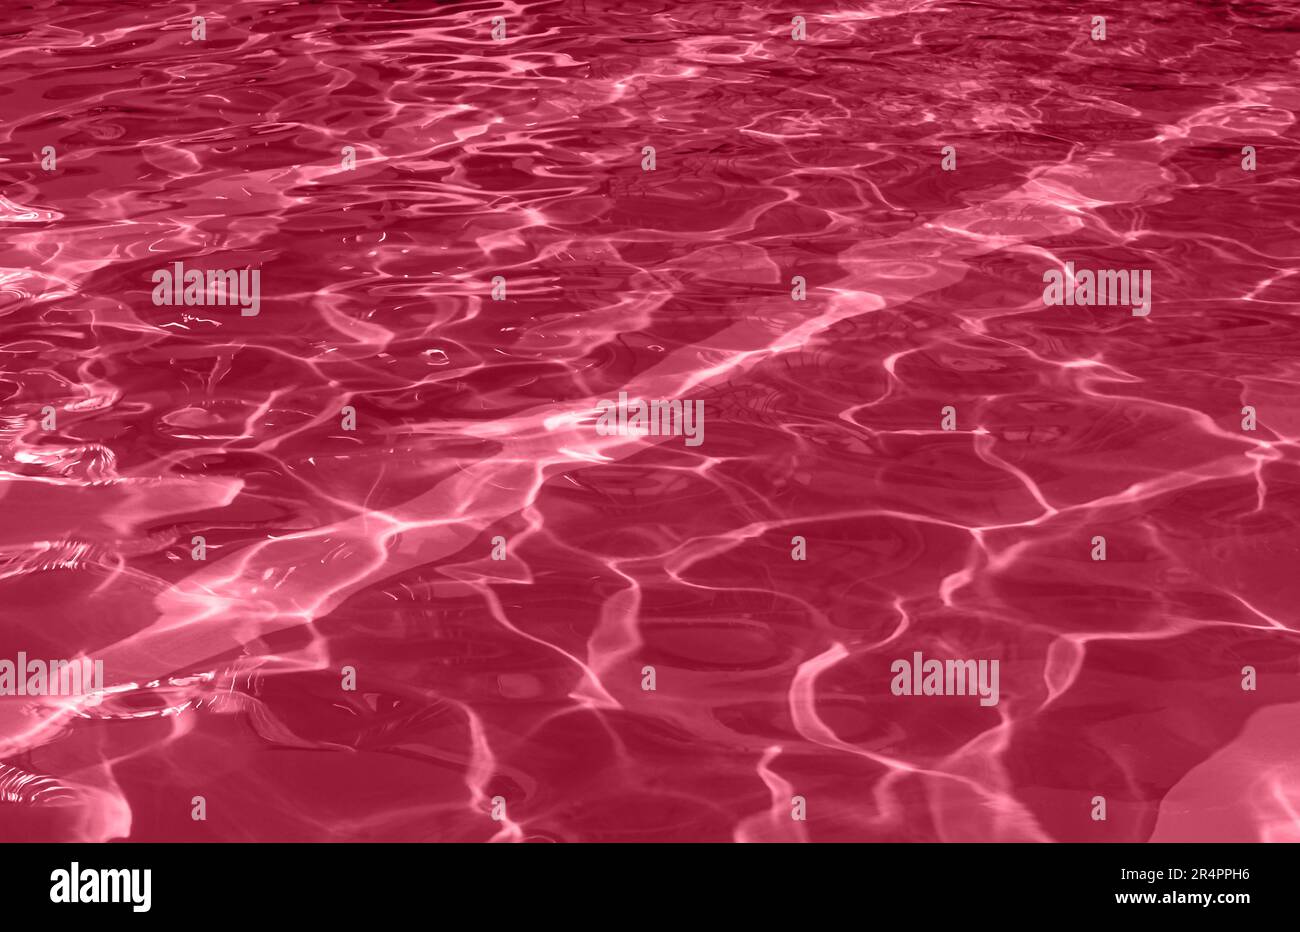 Abstract pattern acqua fondo a trama caustica con pattern di ondulazione e riflesso del sole. Immagine a colori dell'anno 2023 Viva Magenta Foto Stock